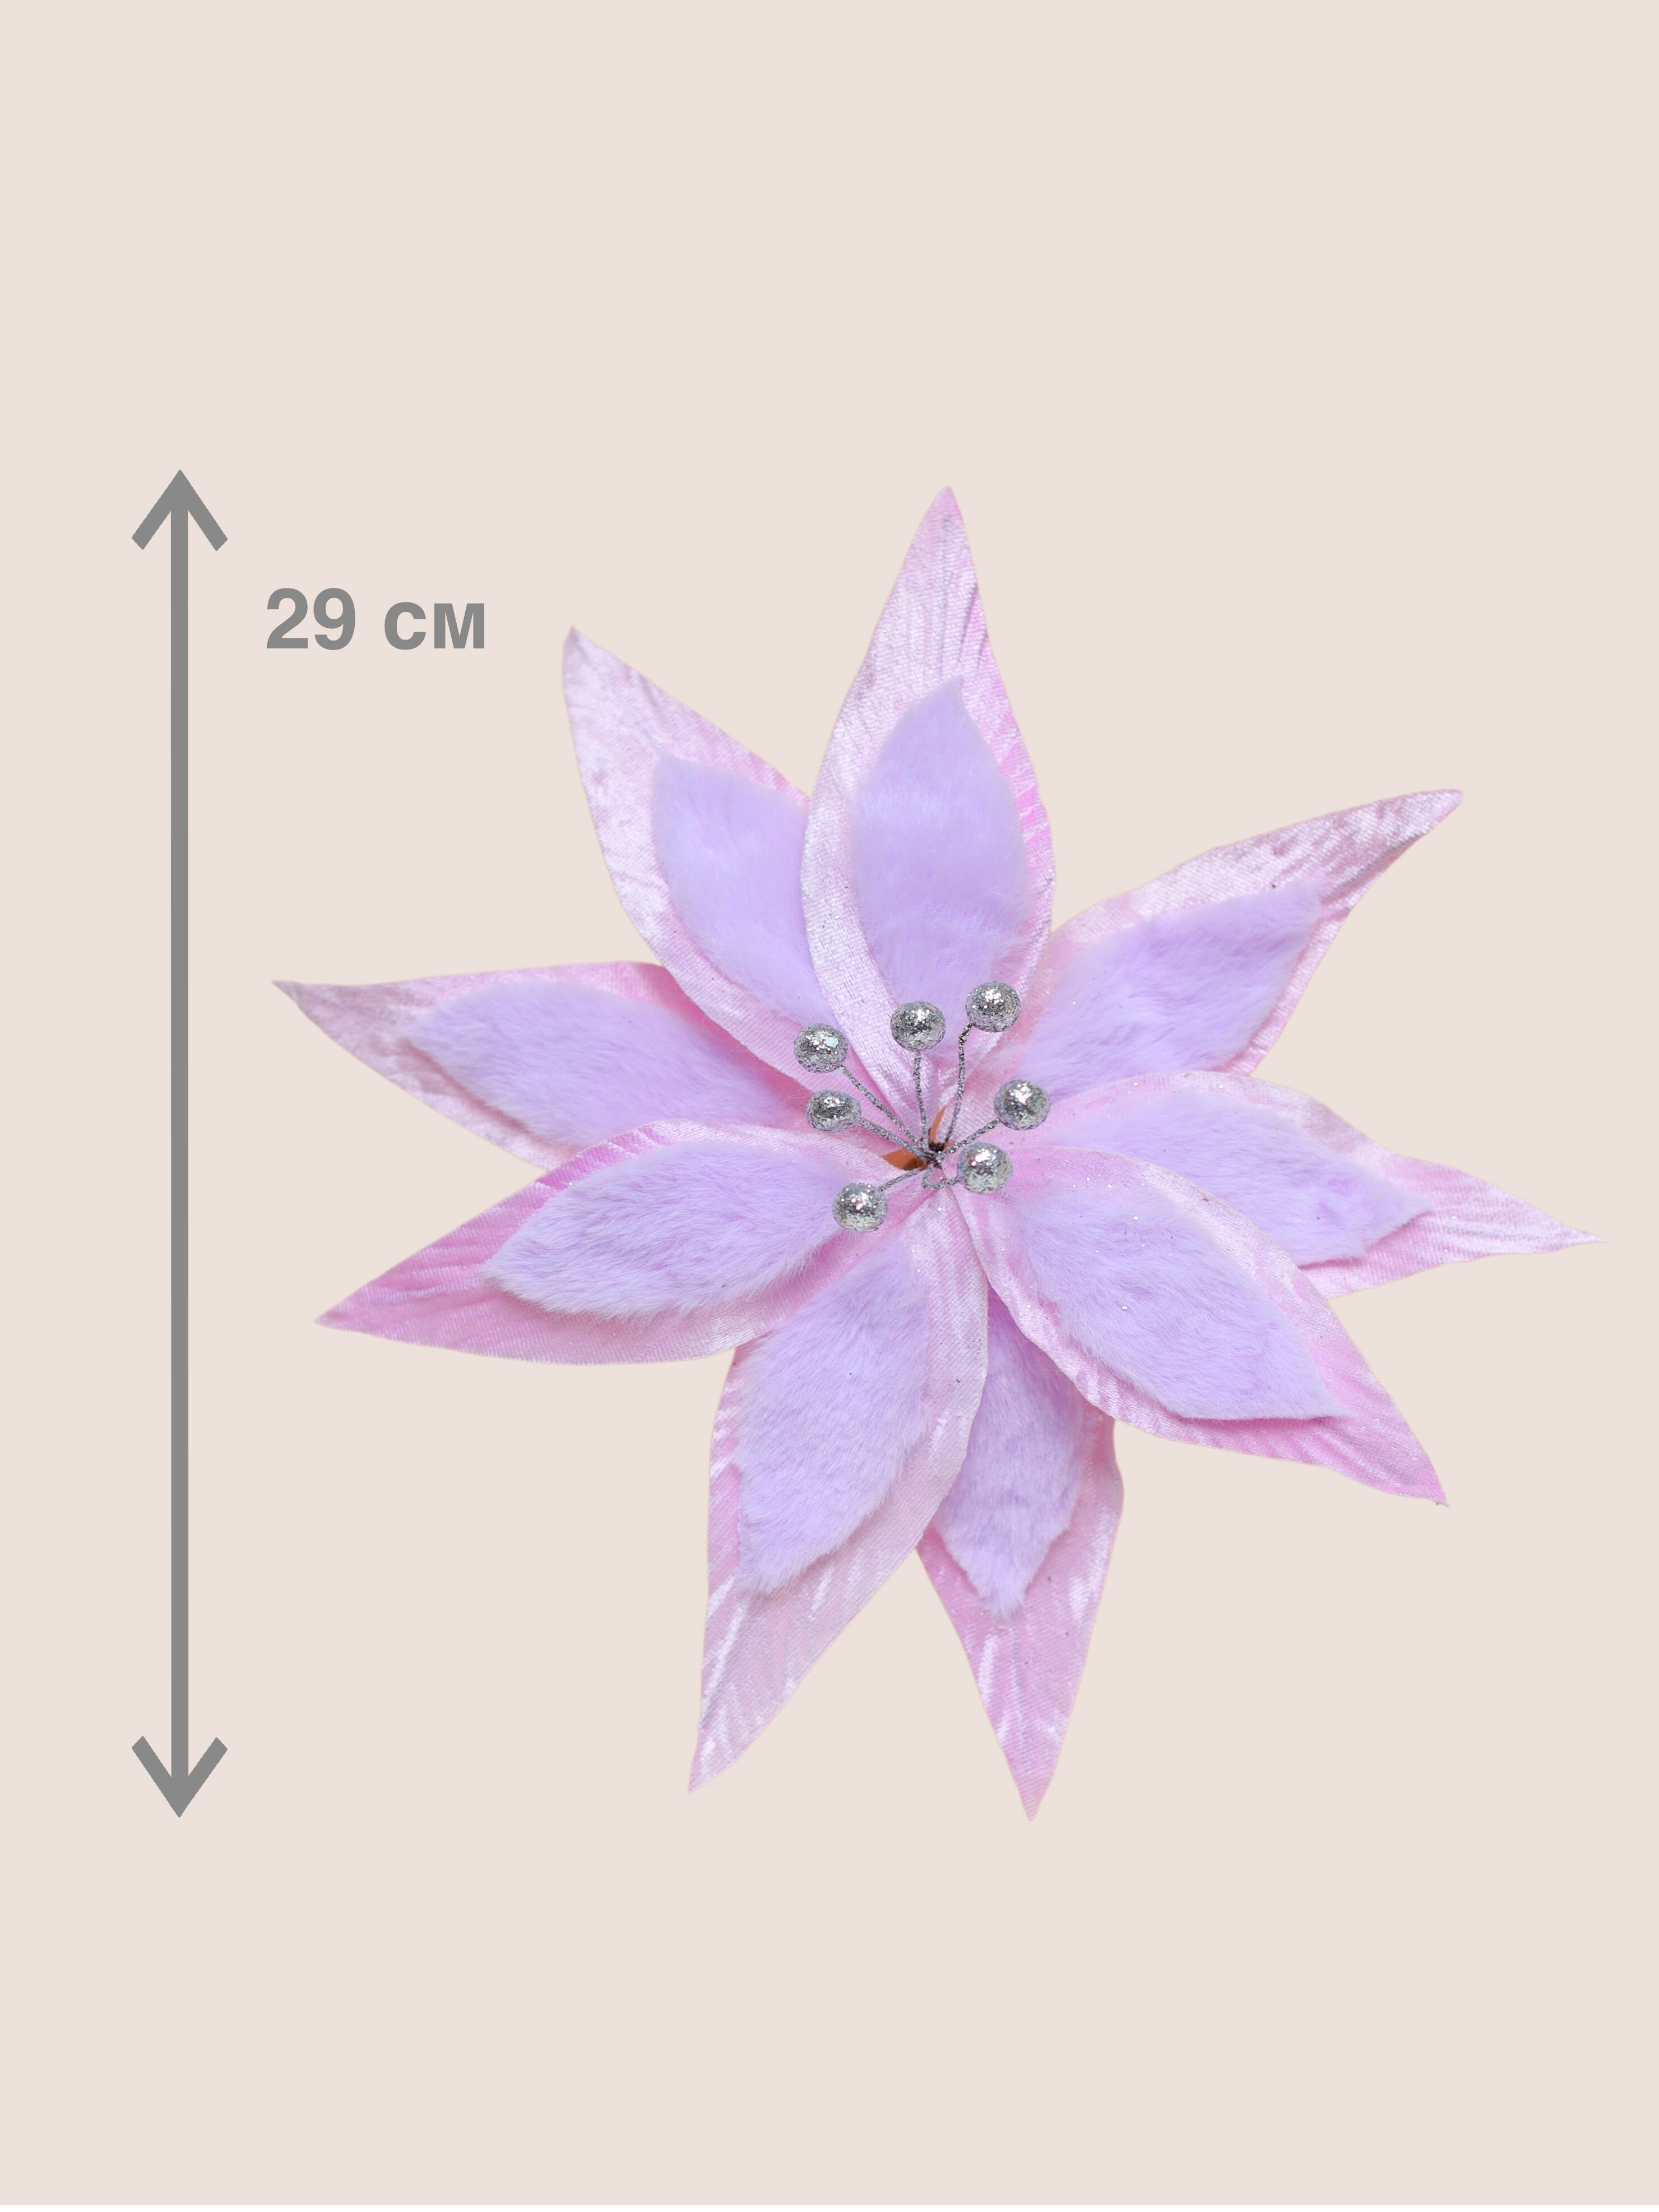 Цветок искусственный декоративный новогодний, диаметр 29 см, цвет фиолетовый